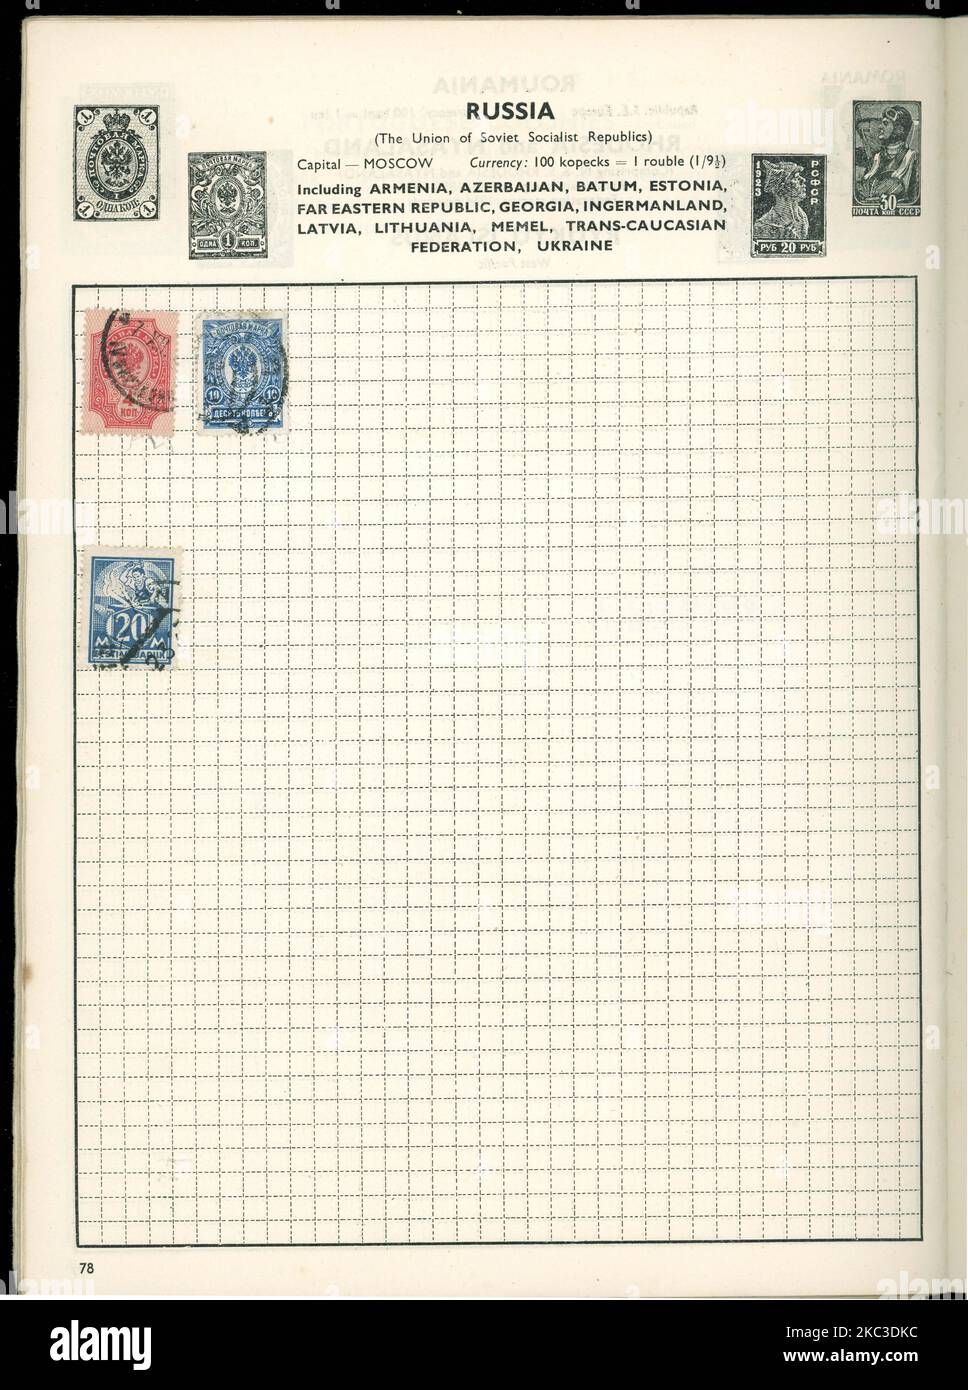 Page d'un album de timbres d'époque avec des timbres de 1909 Russie impériale (10 et 4 timbres kopeks) et un timbre bleu (20 marques) de la République socialiste soviétique estonienne (eesti vabariik) vers 1925 Banque D'Images